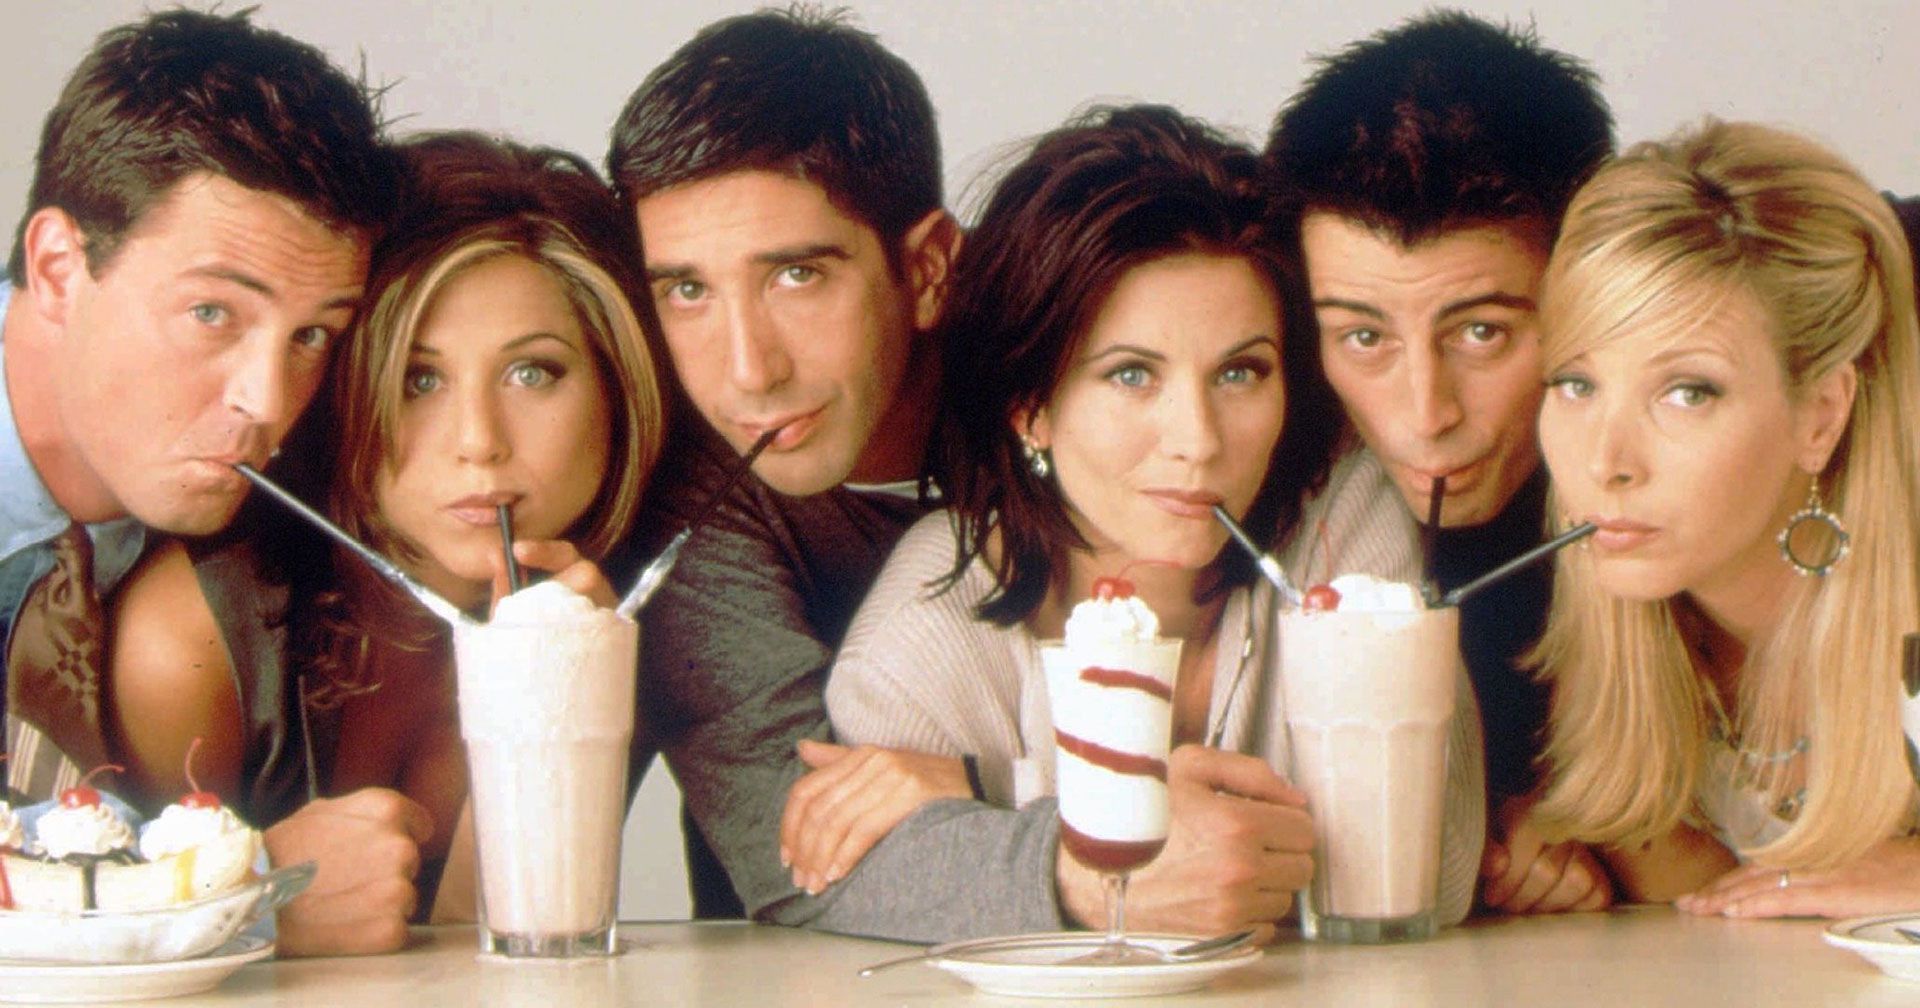 Los fanáticos tendrán un mes para vivir de cerca la experiencia “Friends” (Foto: Warner Bros.)